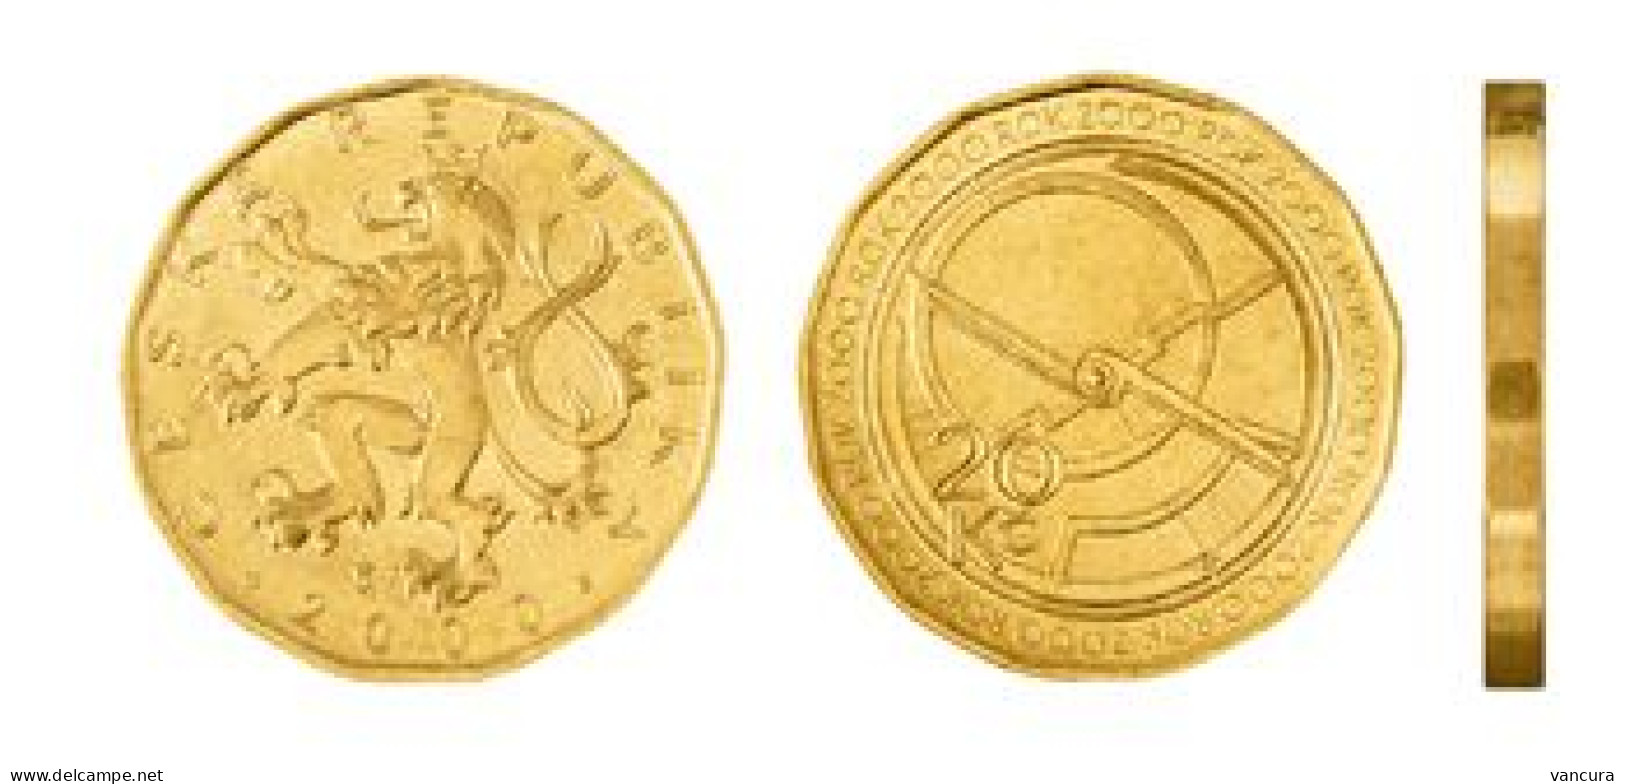 Czech Republic 20 Kc Coin With St Wenceslas 2000 Commemorative Coin Devoted To Millenium - Czech Republic